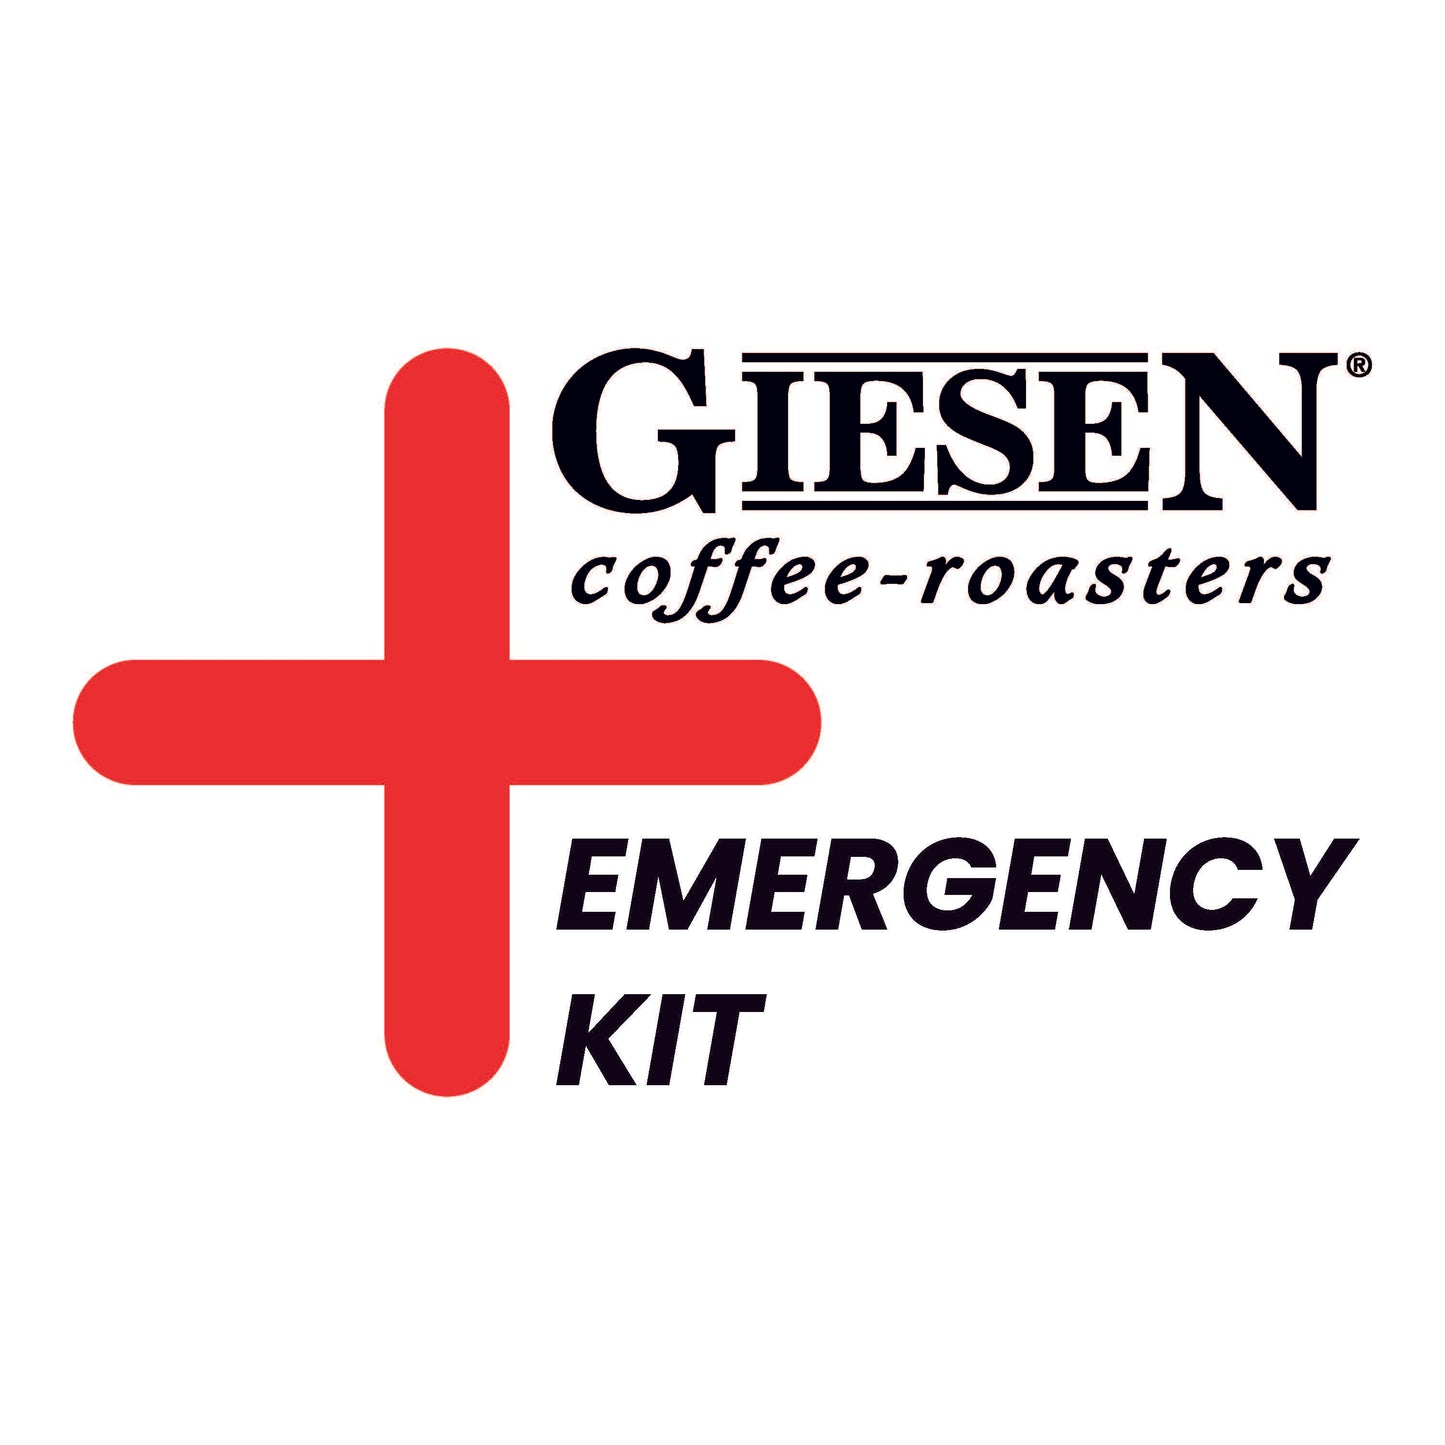 Emergency kit XL - W60A series / CE version